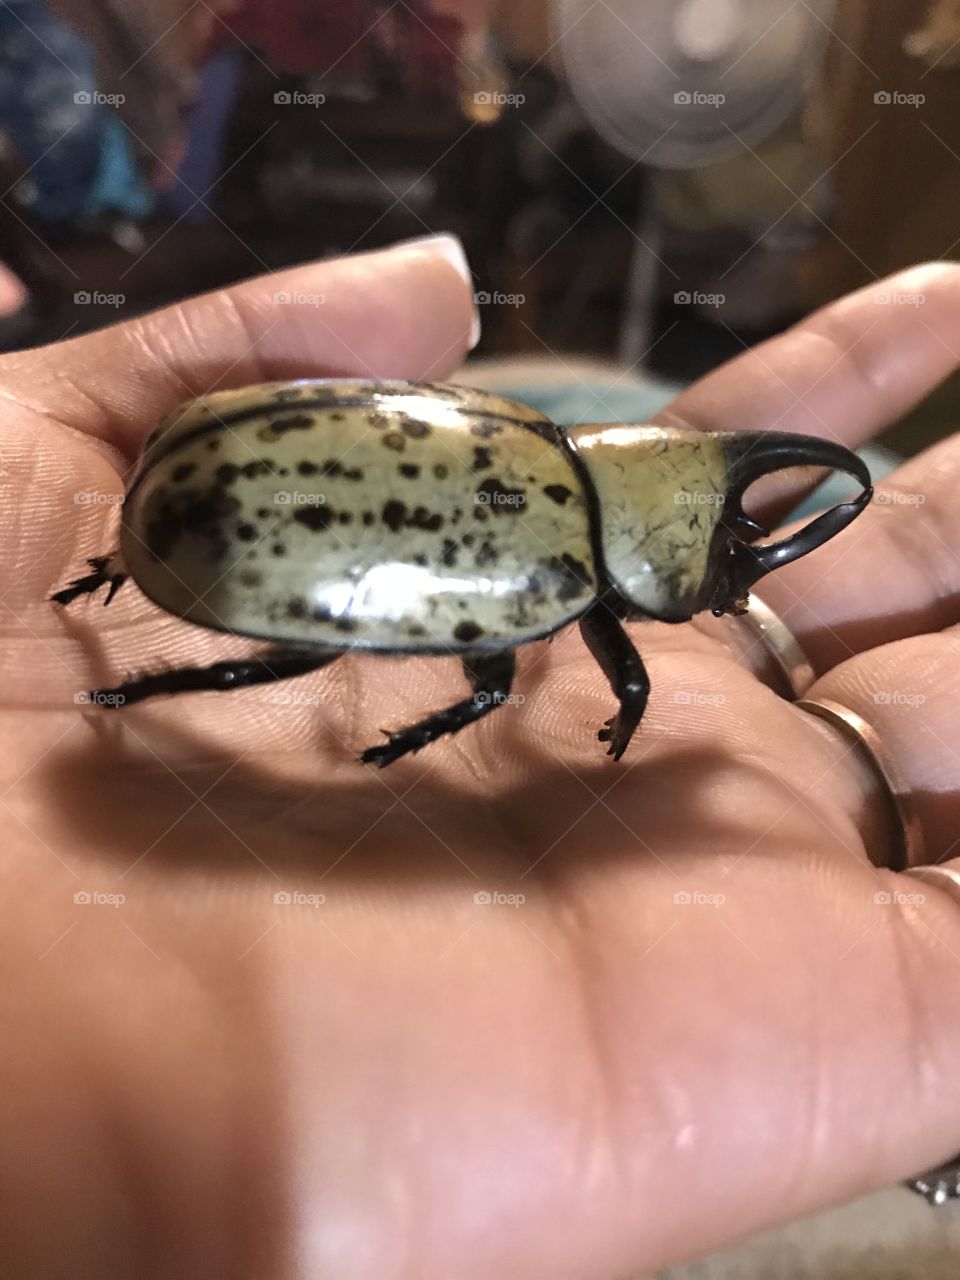 Western Hercules beetle 